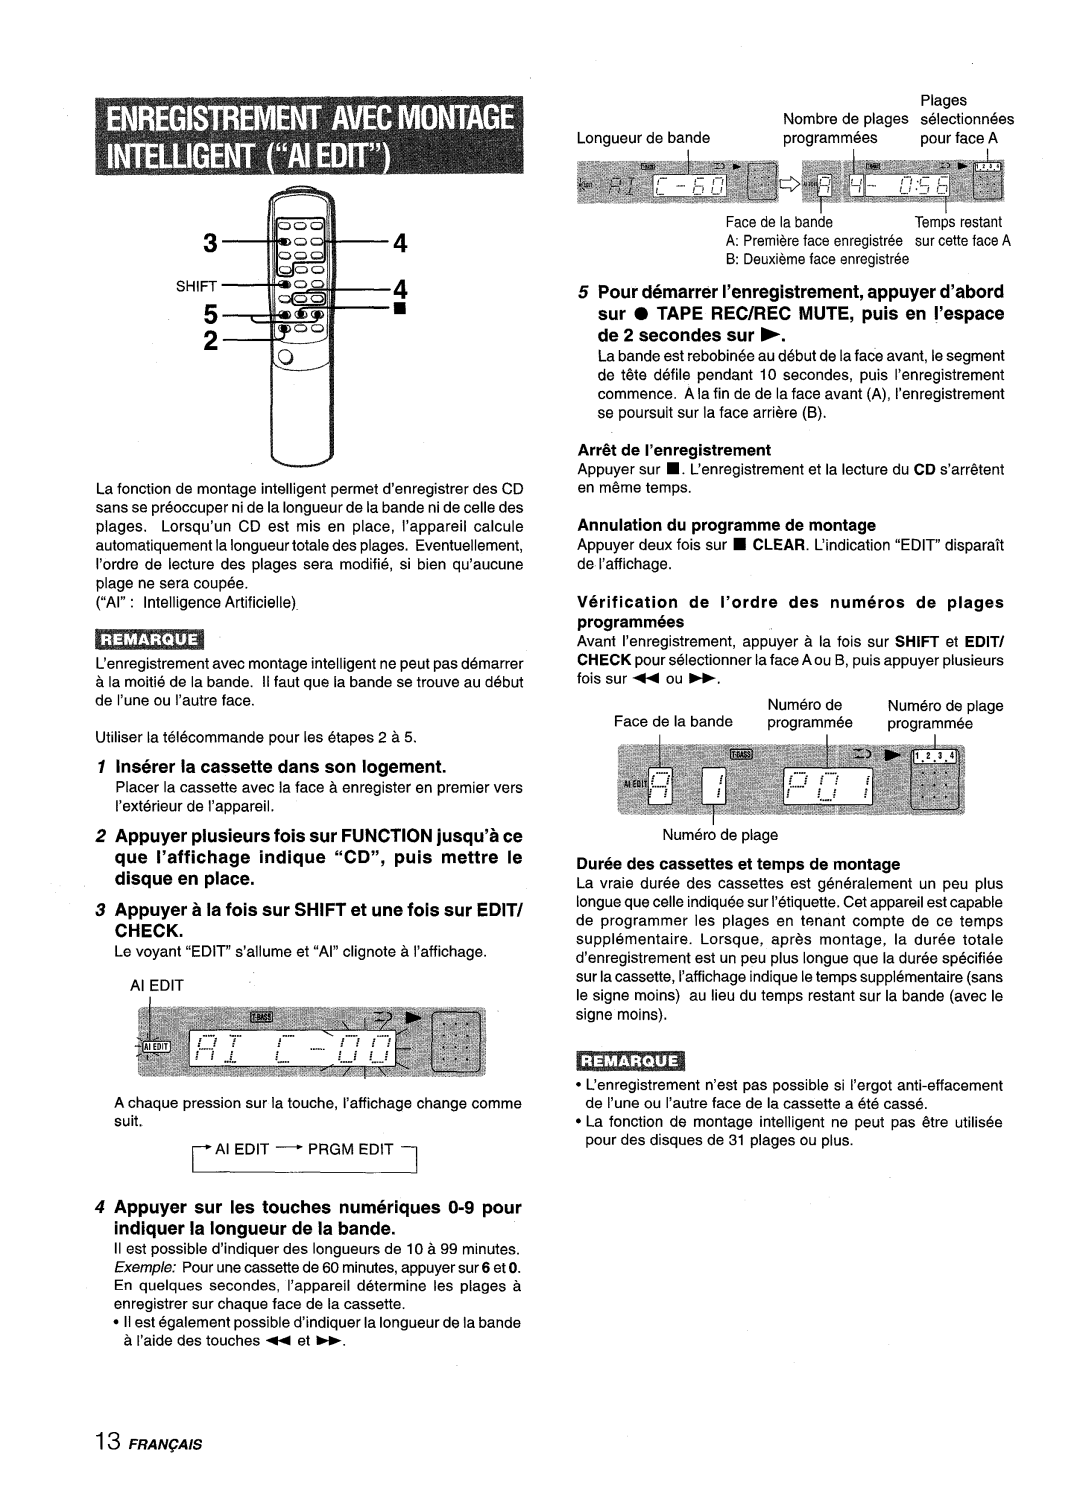 Aiwa XM-M25 manual Inserer la cassette clans son Iogement, Appuyer plusieurs fois sur FUNCTION jusqu’a ce 